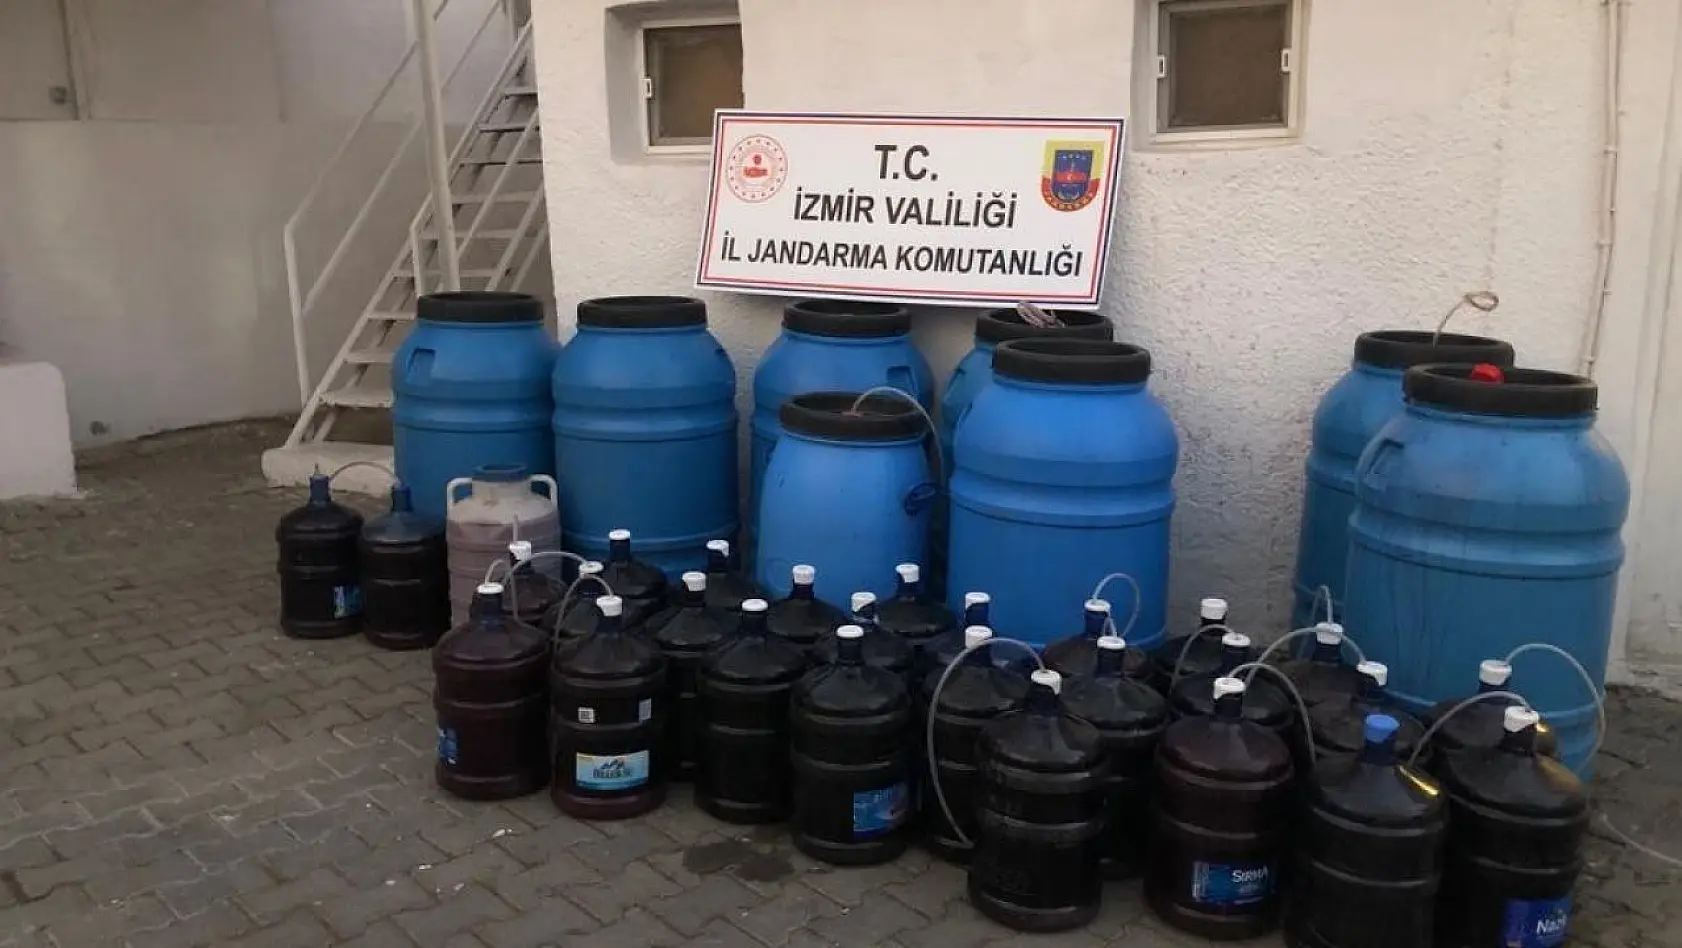 İzmir'de binlerce litre kaçak içki ele geçirildi